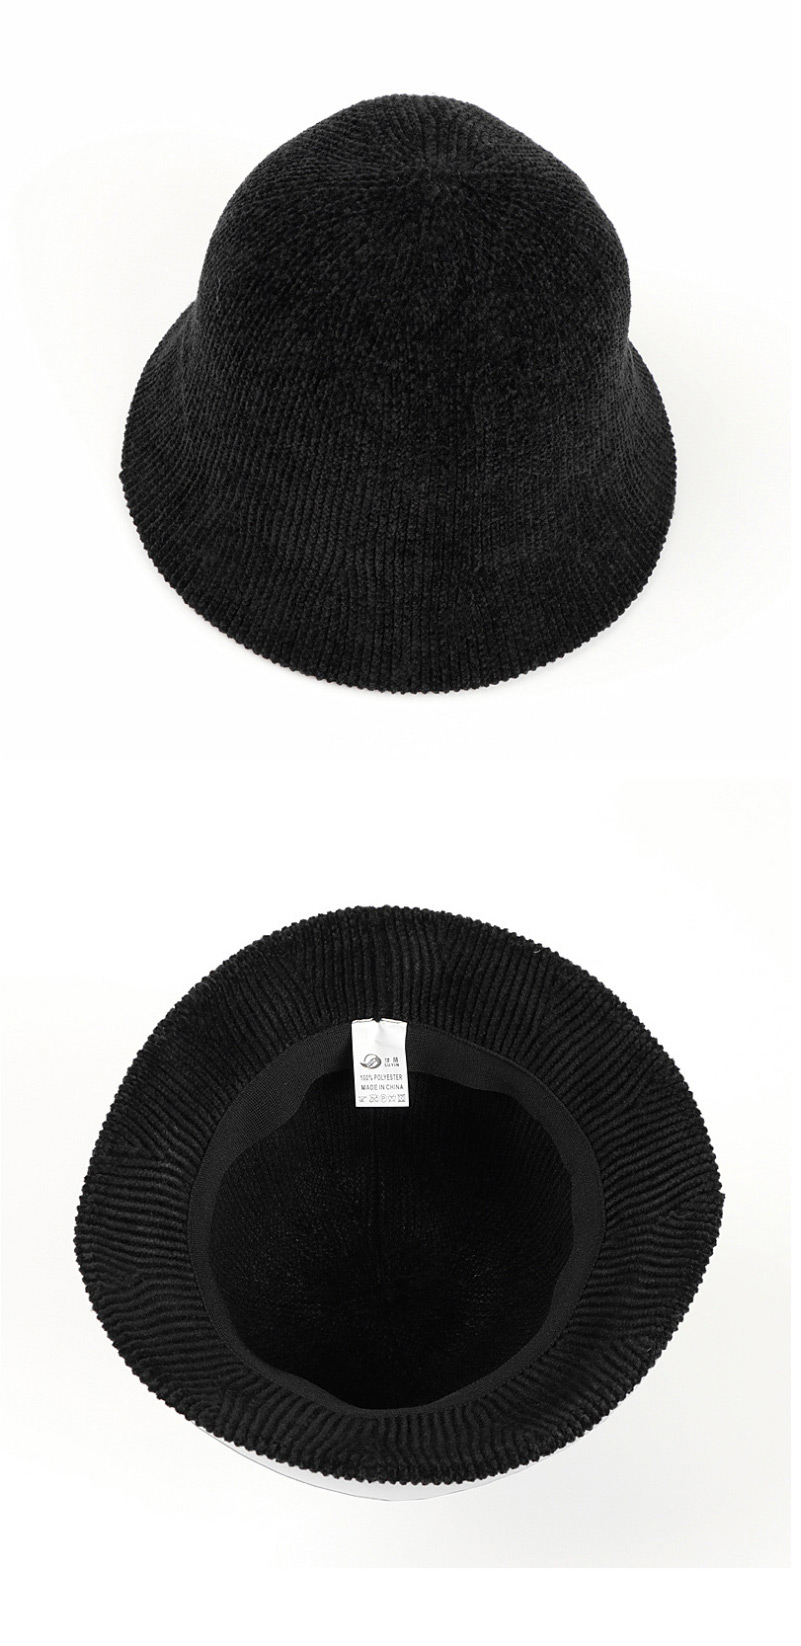 Fashion Caramel Corduroy Dome Knitted Fisherman Hat,Sun Hats